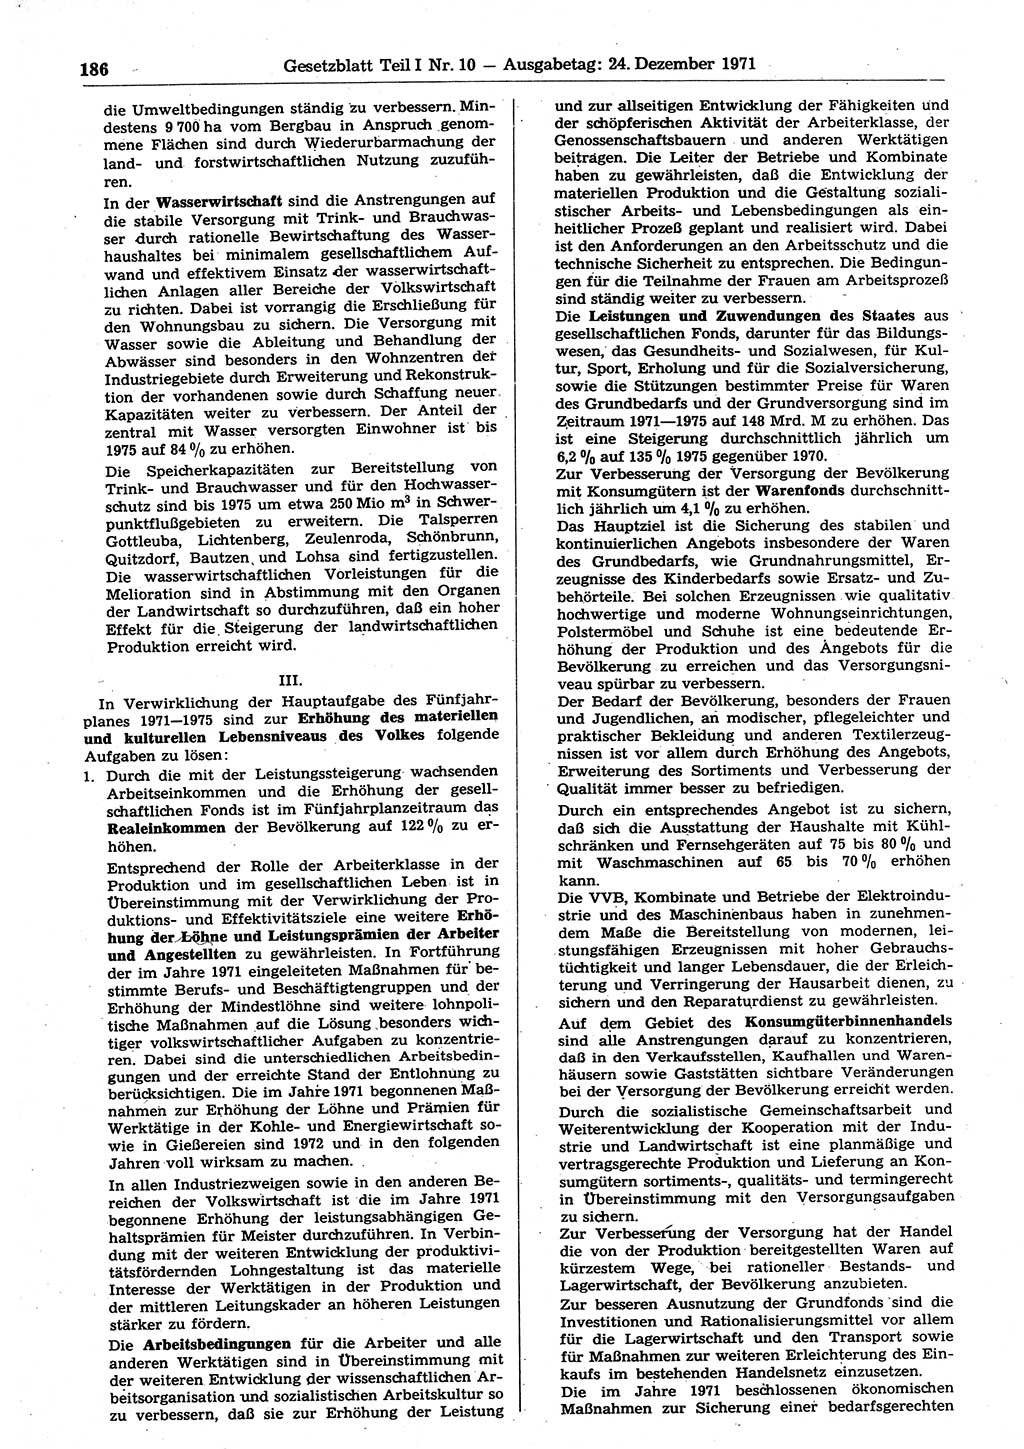 Gesetzblatt (GBl.) der Deutschen Demokratischen Republik (DDR) Teil Ⅰ 1971, Seite 186 (GBl. DDR Ⅰ 1971, S. 186)